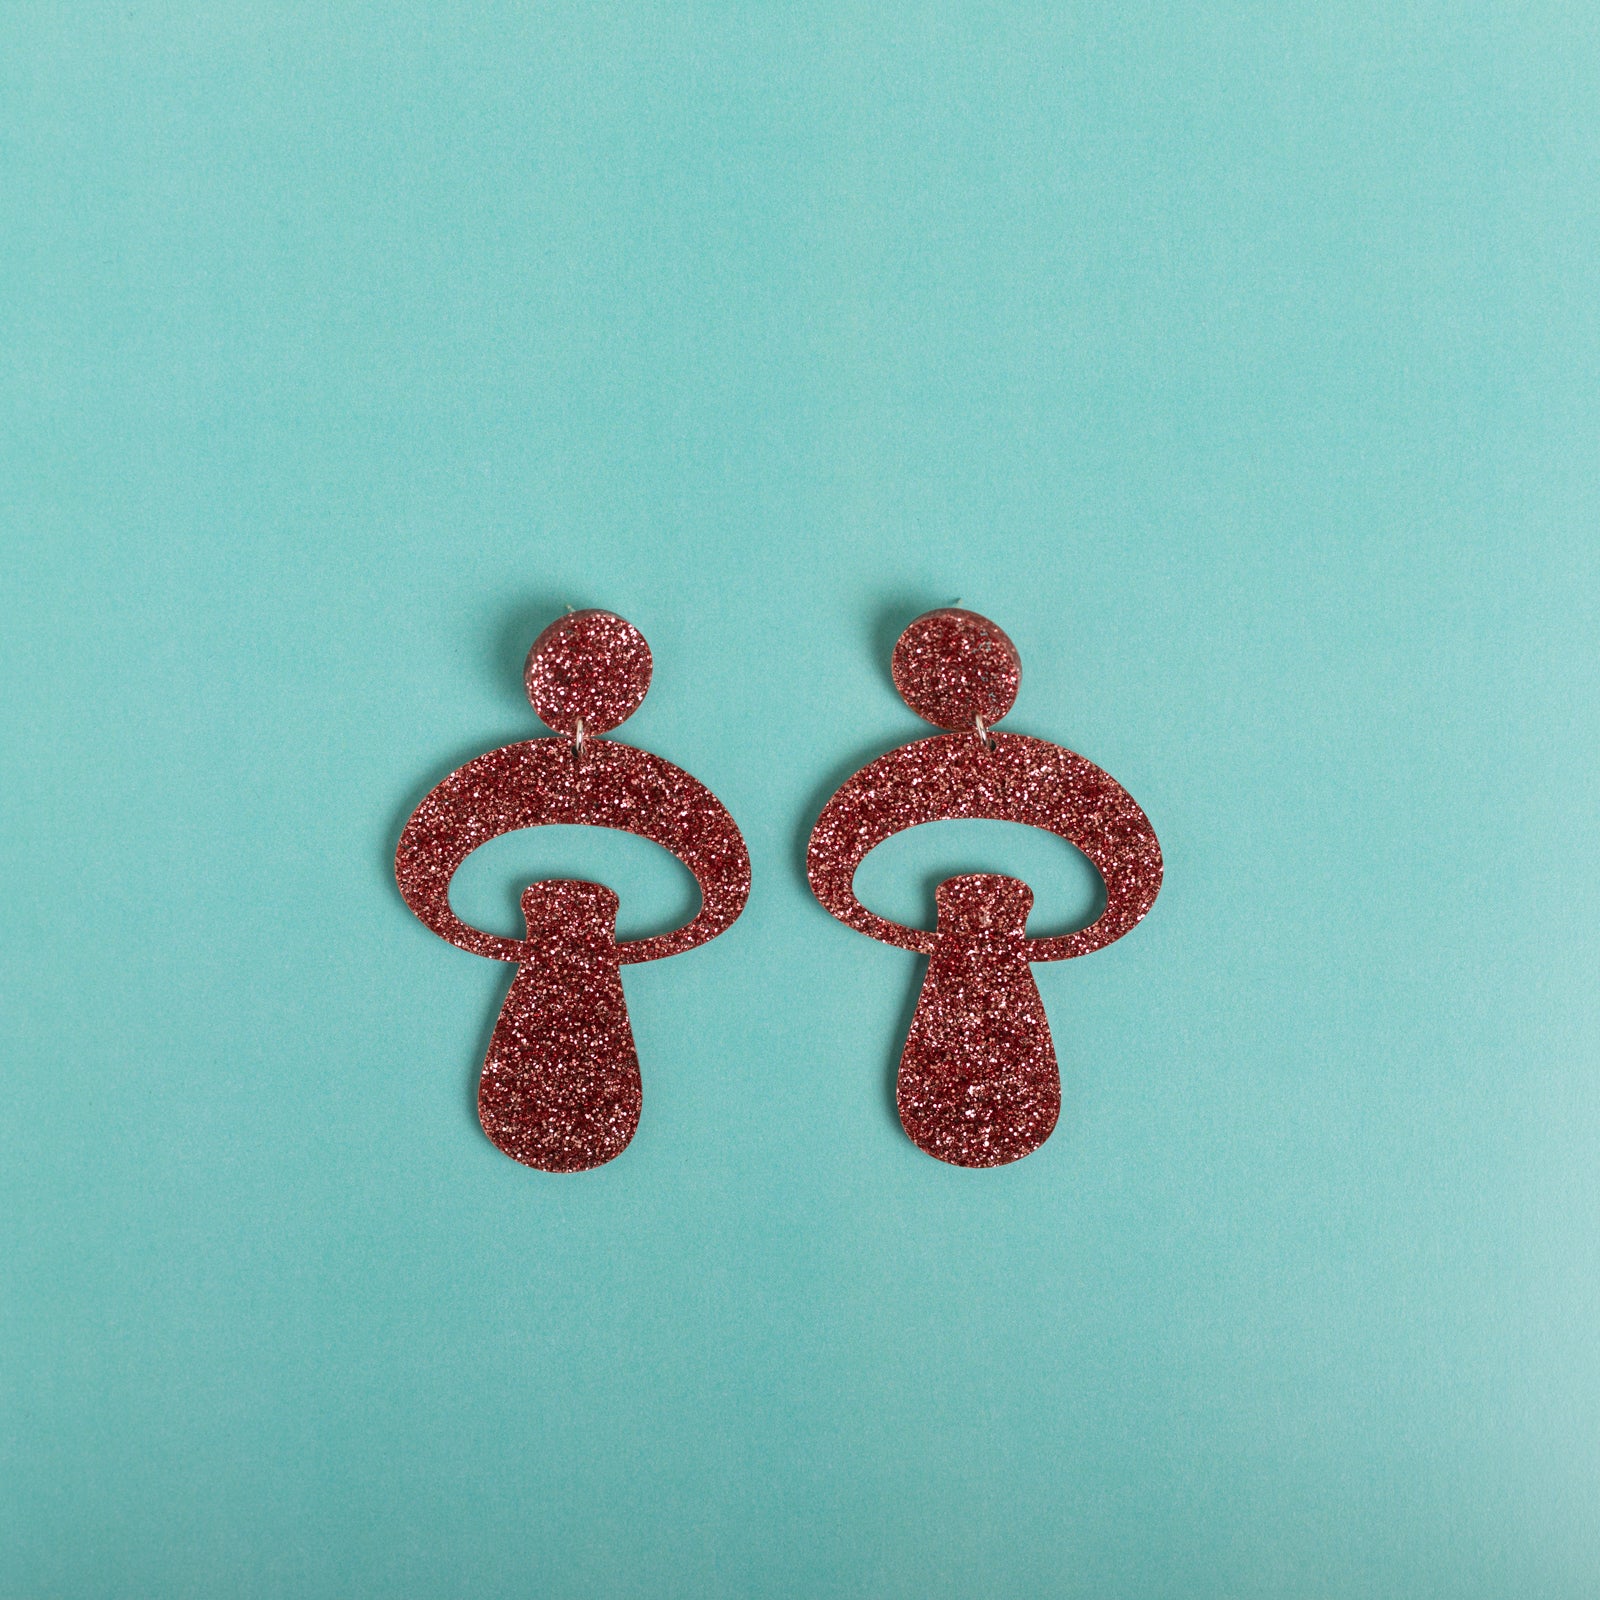 The Alice Mushroom Stud Earrings